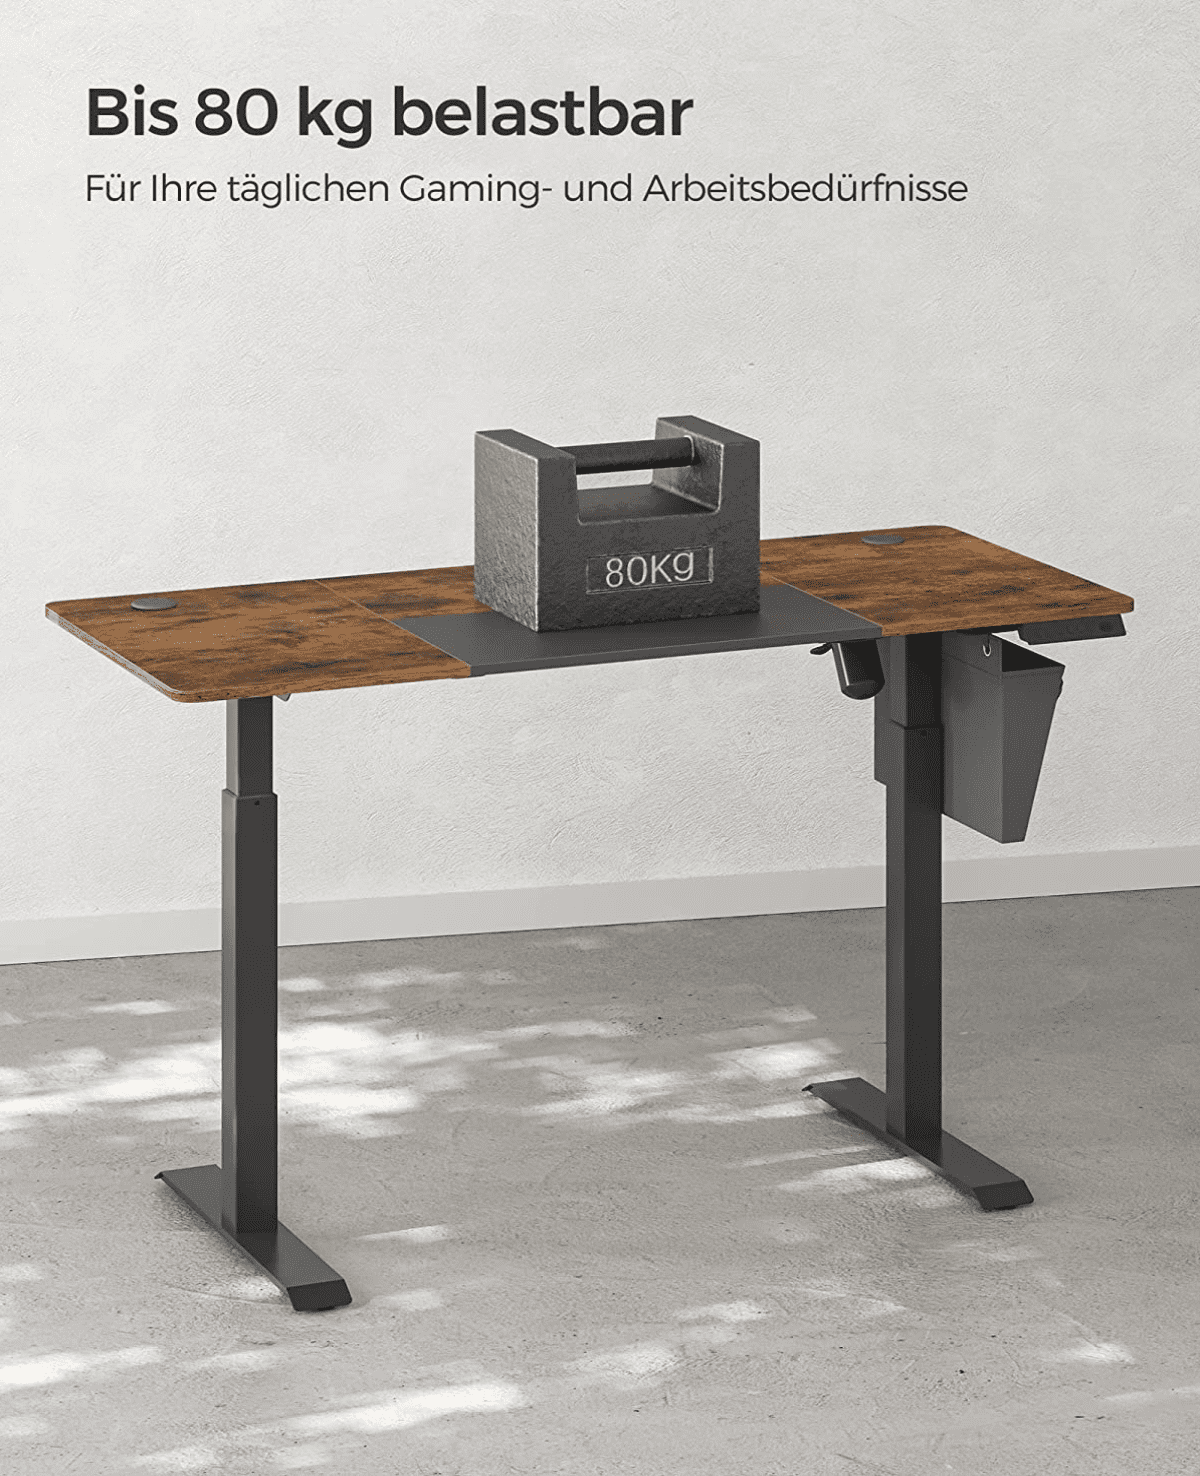 Dieser elektrische Schreibtisch mit stabilem Stahlrahmen, der bis zu 80 kg tragen kann